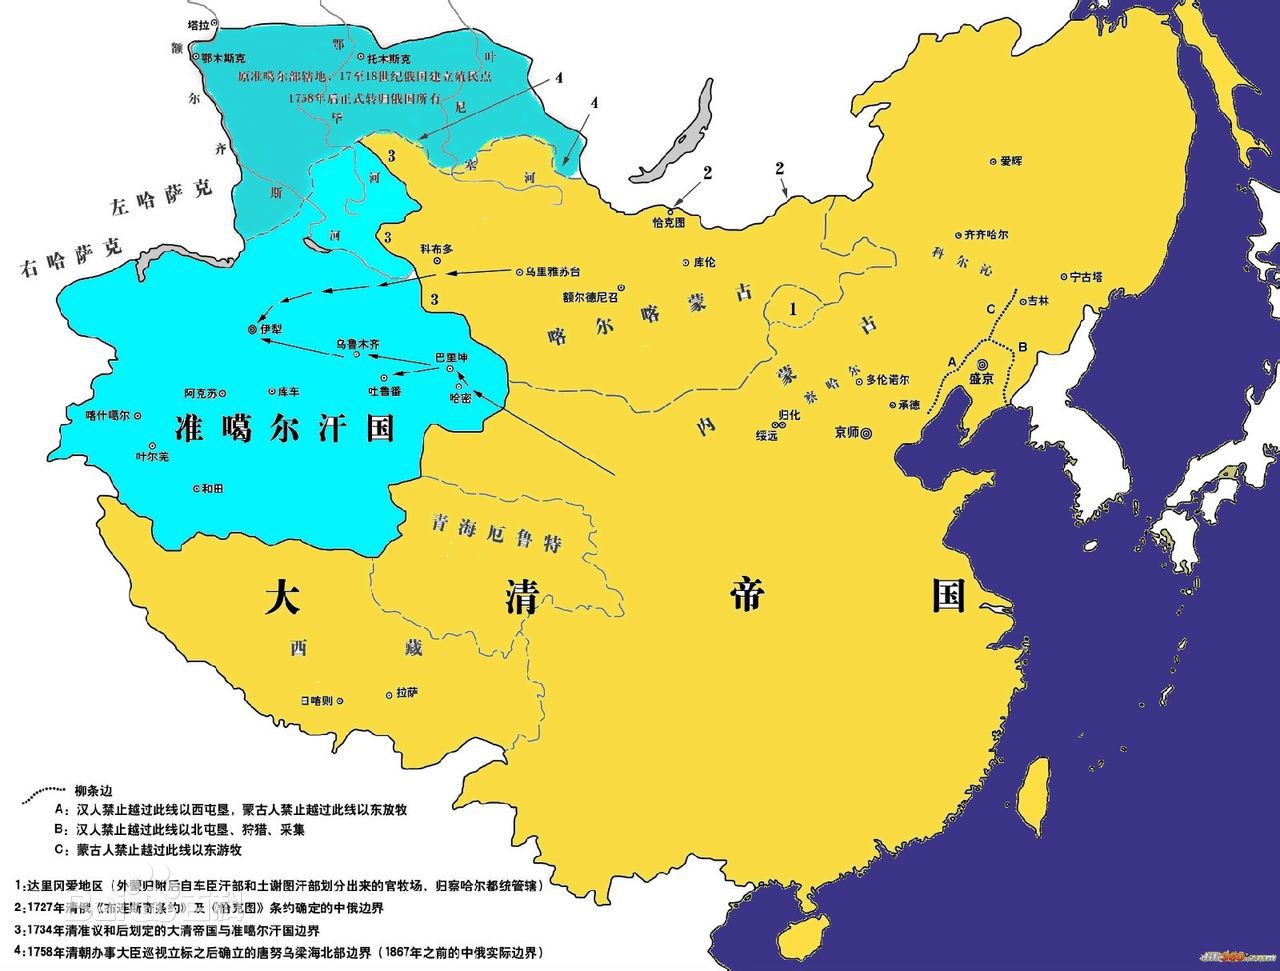 中国和俄罗斯瓜分了蒙古(蒙古帝国灭亡后的亚欧大陆领土争夺:中国和